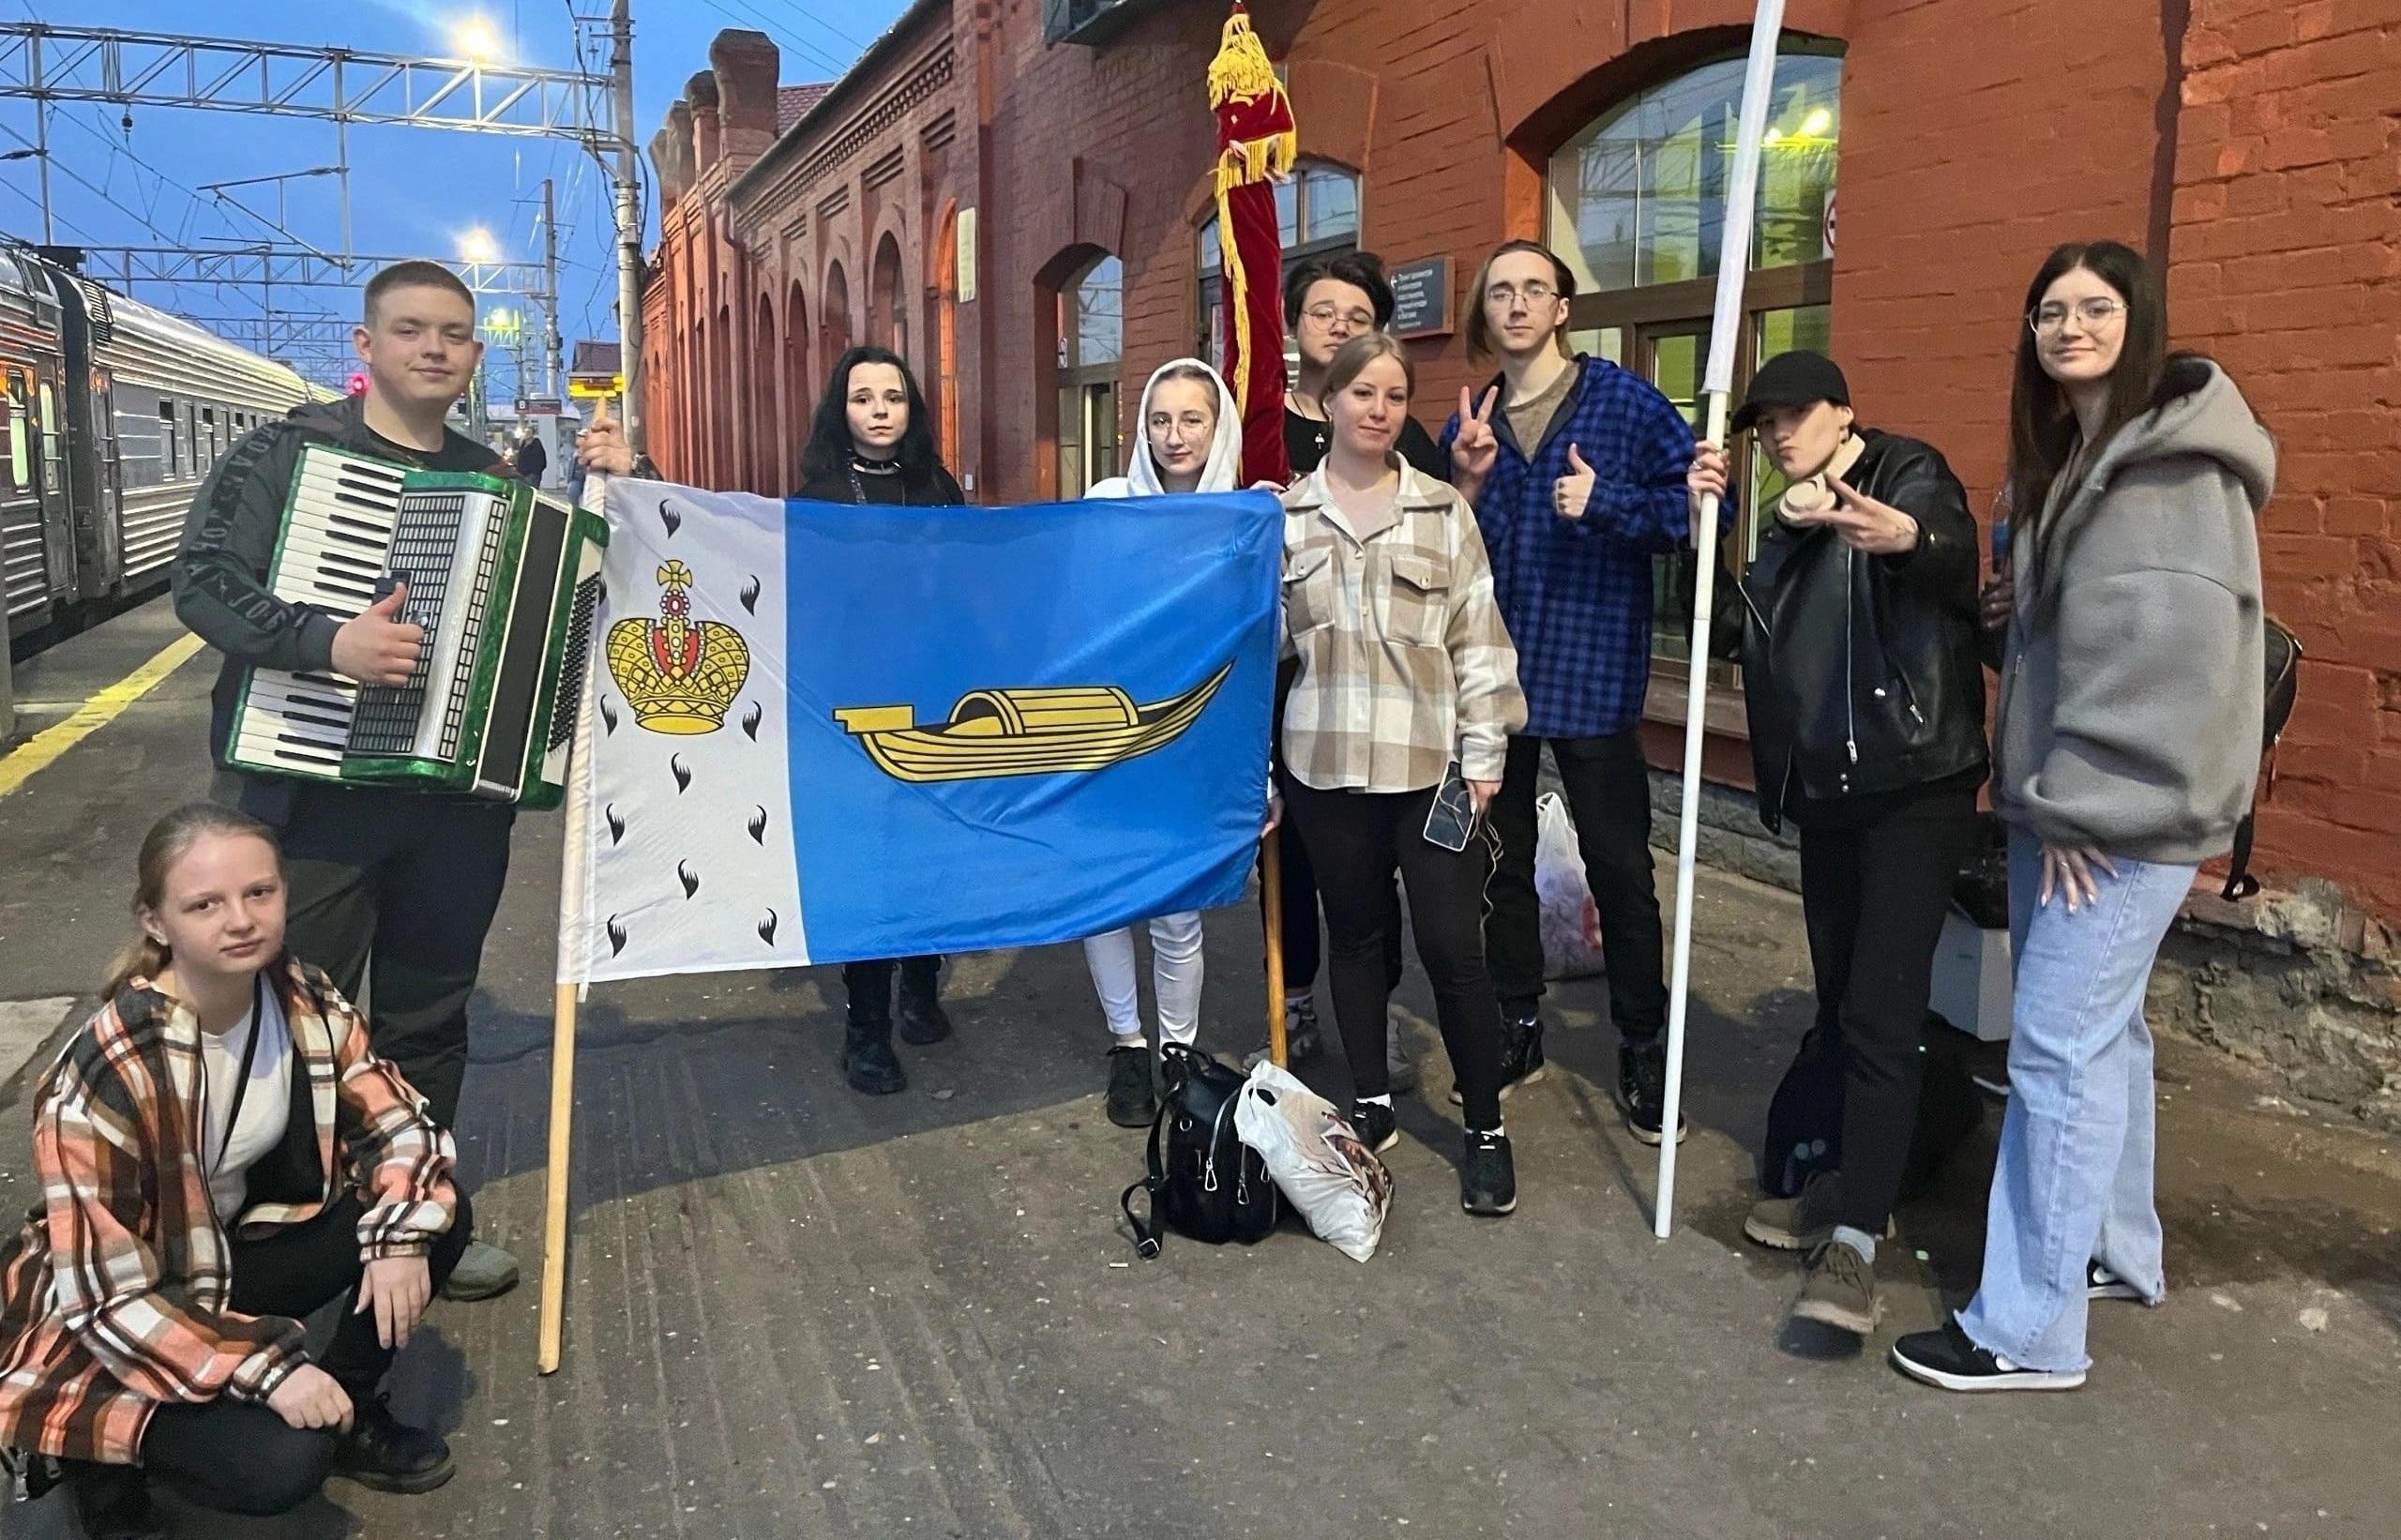 «Импульс» стал самым популярным студенческим отрядом Тверской области по мнению читателей «Афанасий-бизнес»